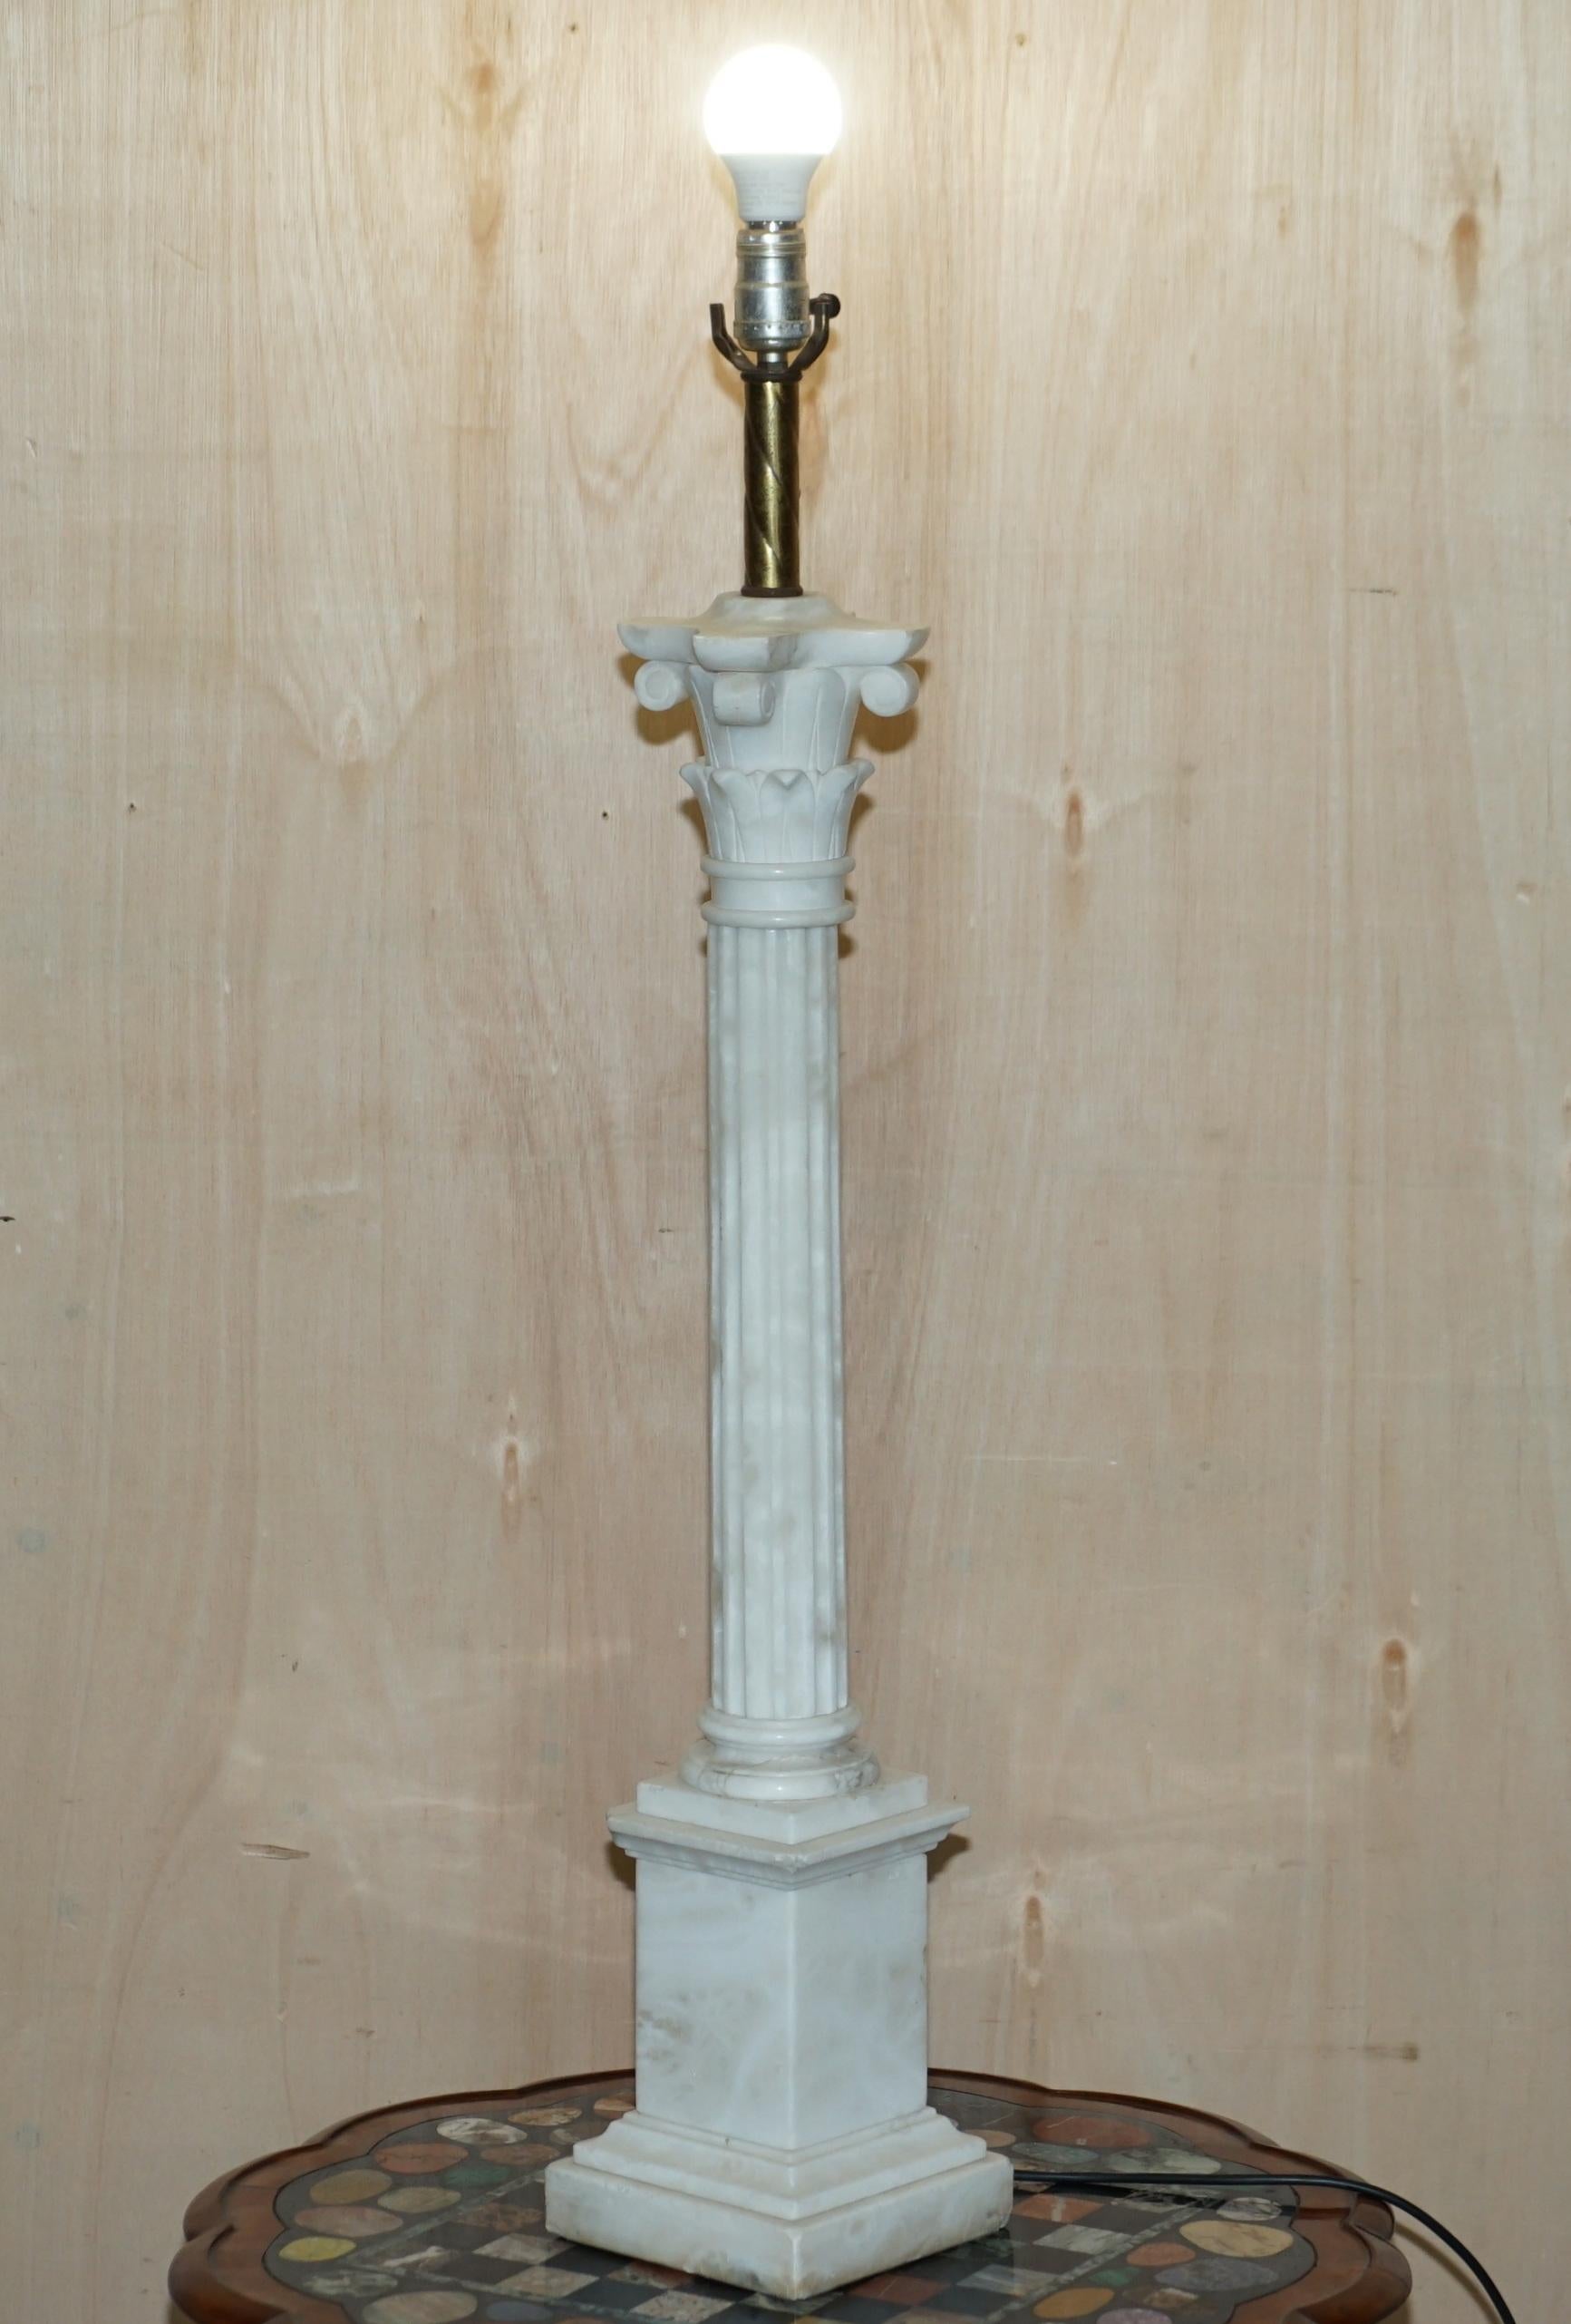 Nous sommes ravis d'offrir à la vente cette lampe de table en marbre de Carrare italien absolument stupéfiante et très grande

Cette lampe est une pièce de collection, elle est exceptionnellement grande pour son type, près d'un mètre de